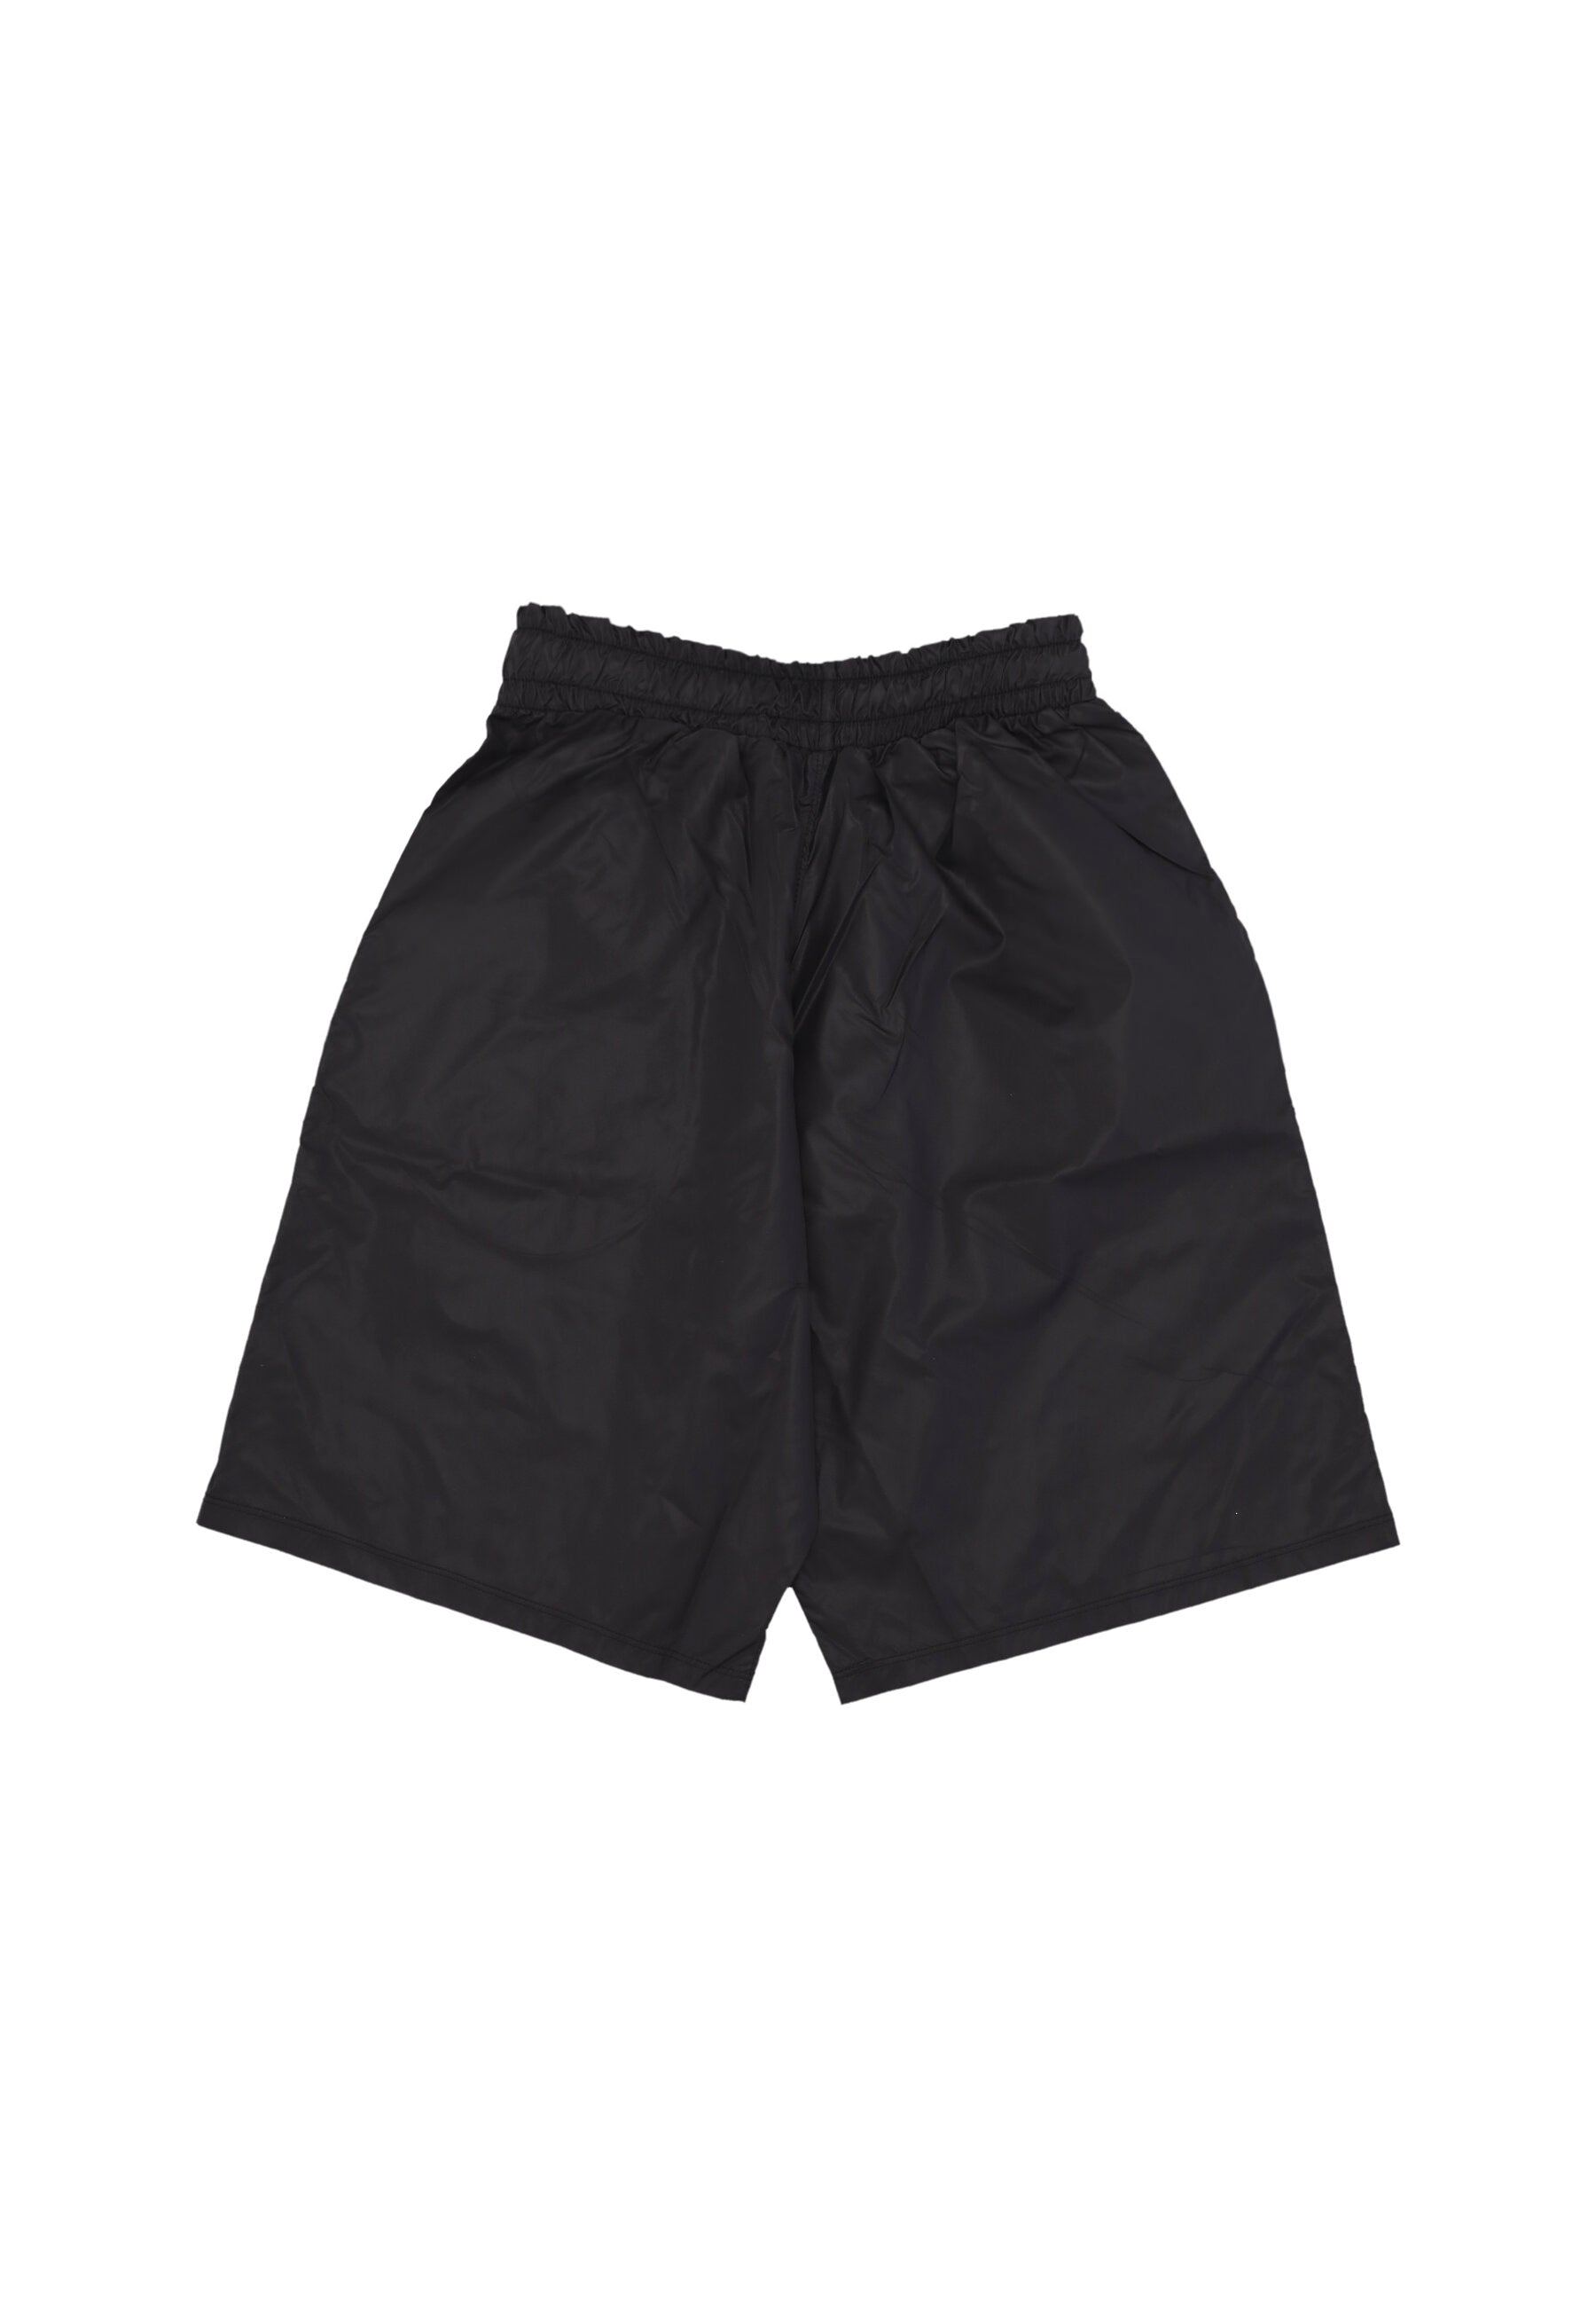 Pantaloncino Uomo Shorts Black G-06